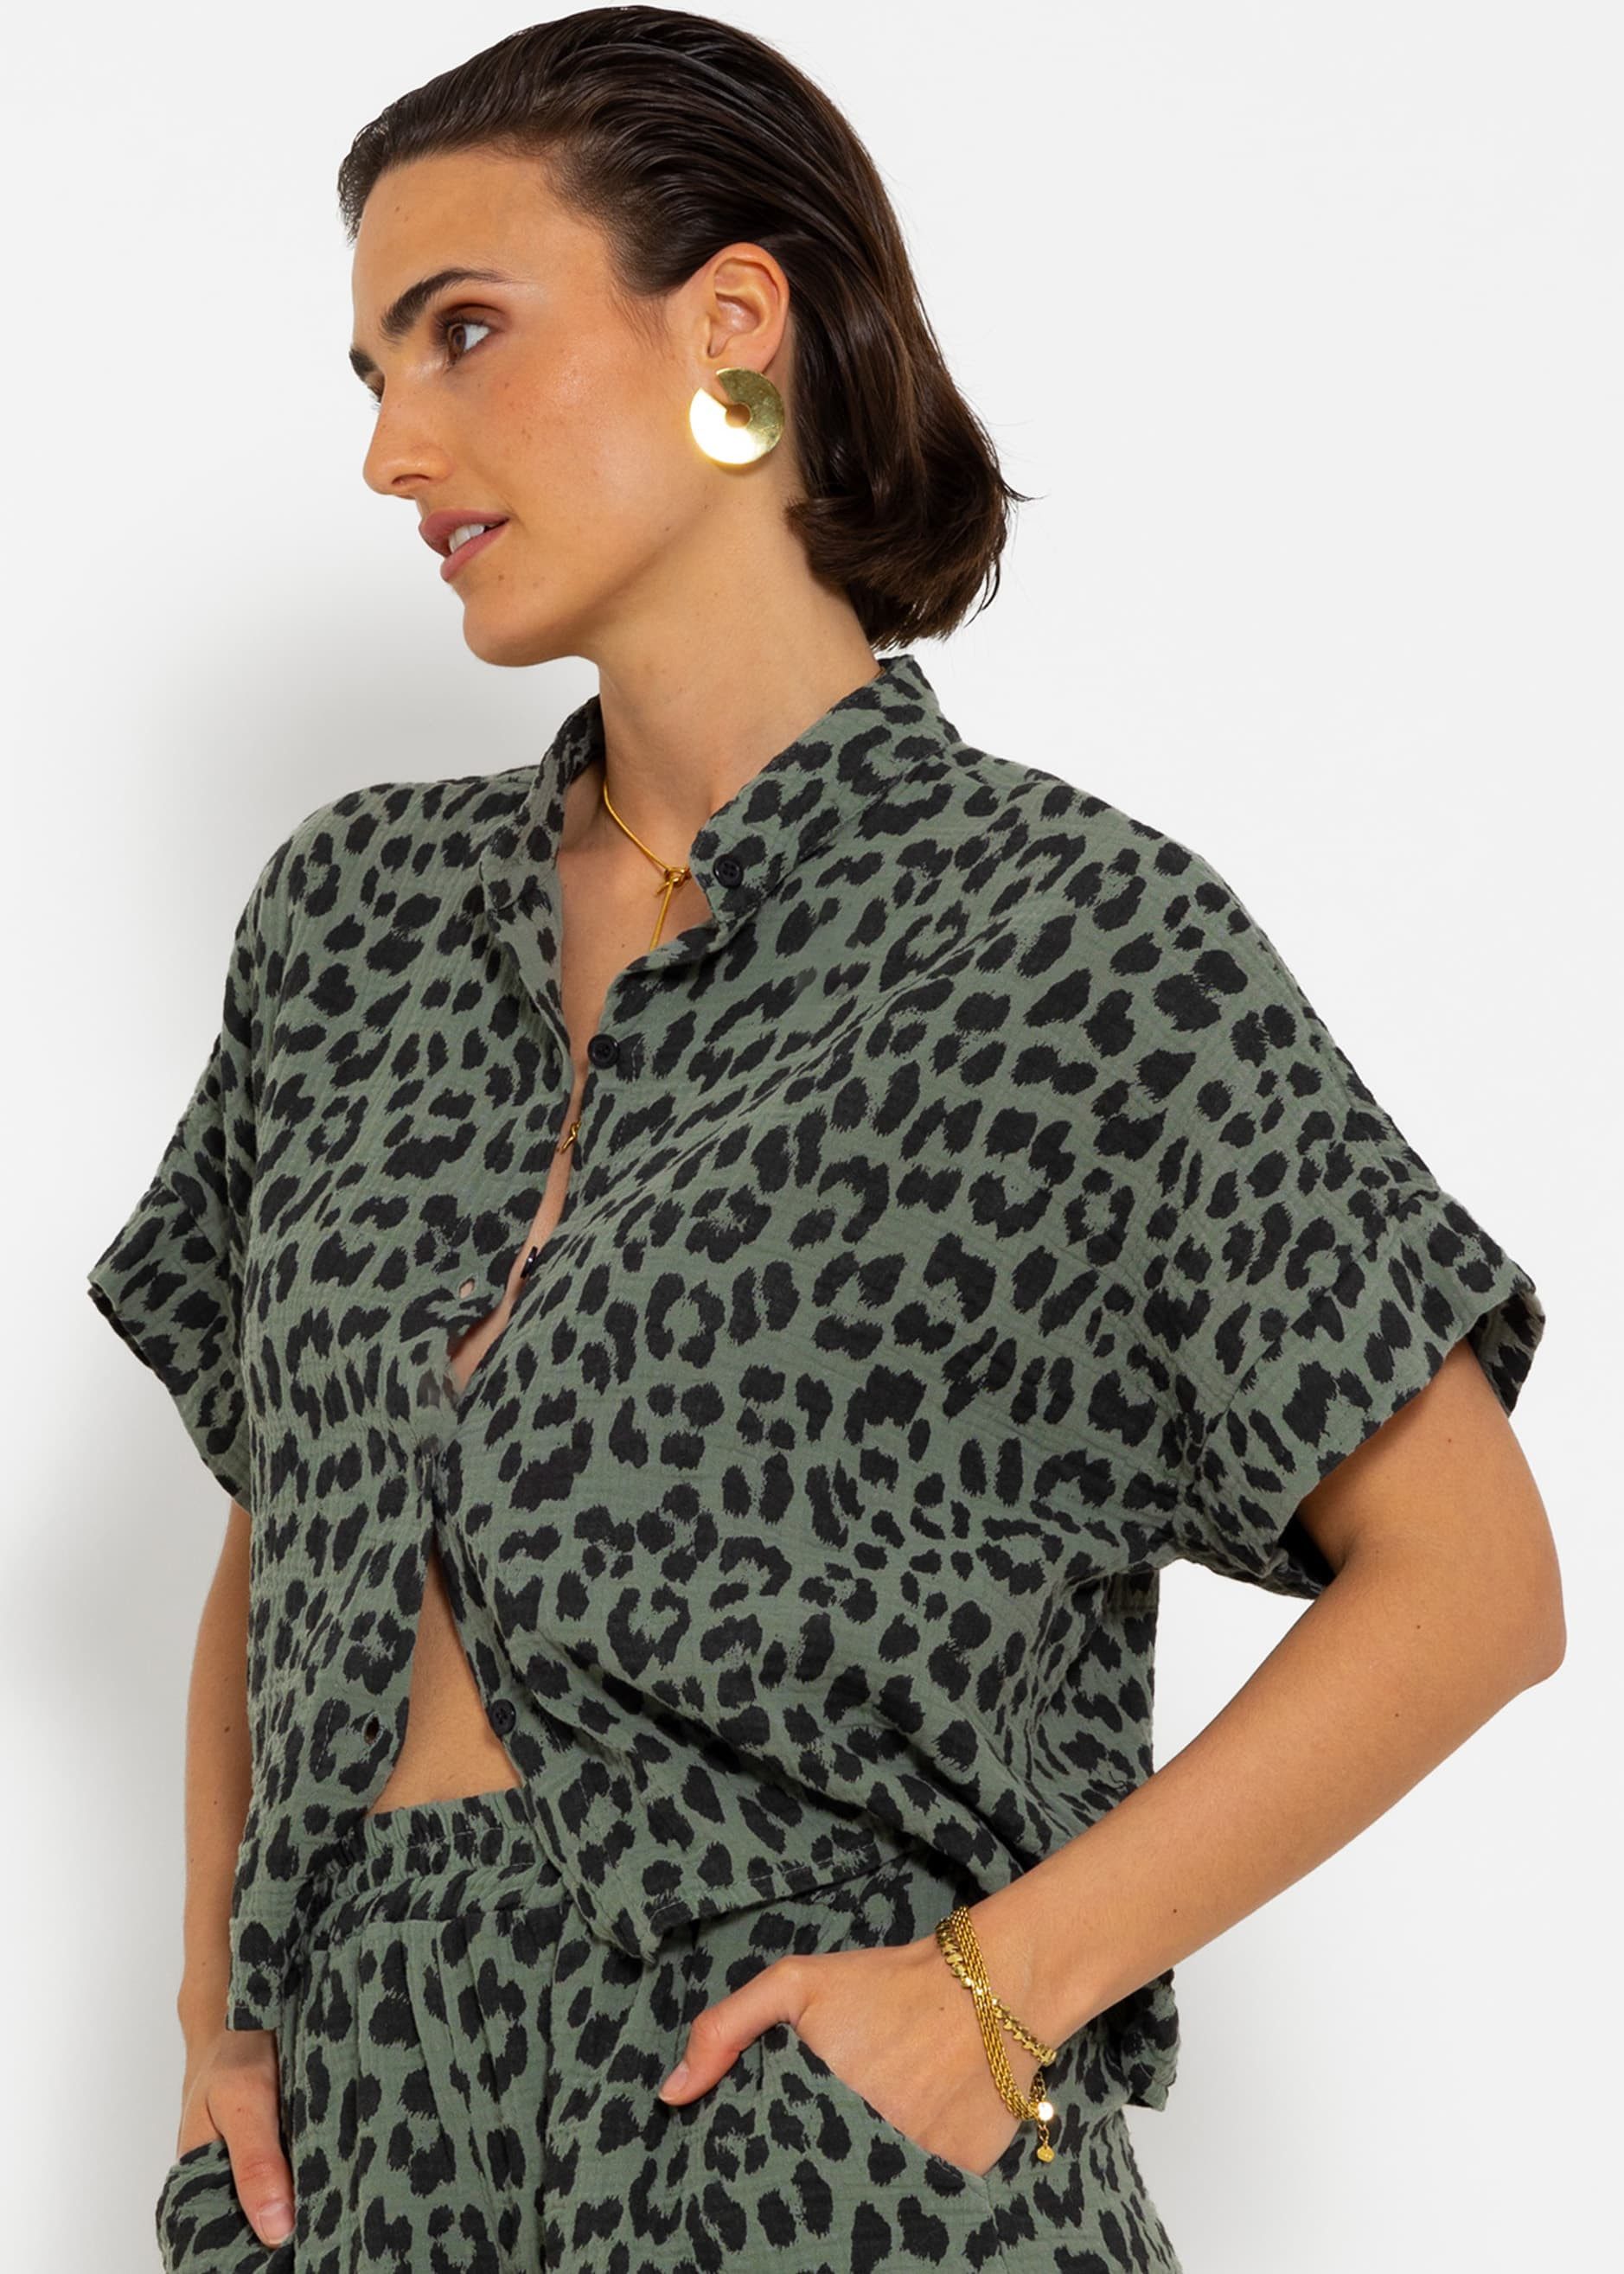 SASSYCLASSY Kurzarmbluse Musselin Bluse mit Leo-Print Lässige cropped Bluse aus Baumwolle mit kurzen Ärmeln